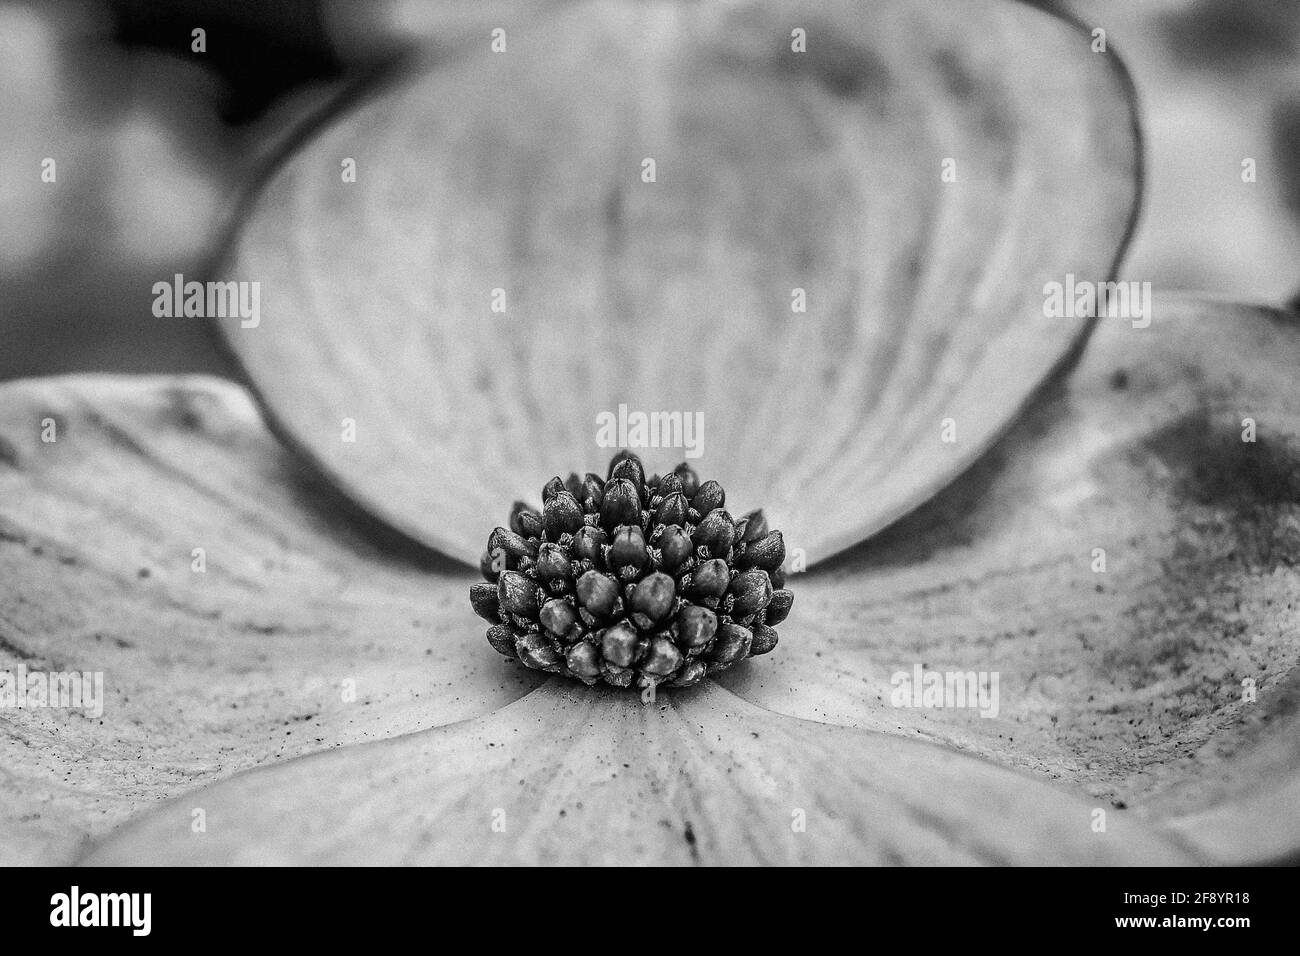 Gros plan d'une fleur de cornouiller en noir et blanc Banque D'Images